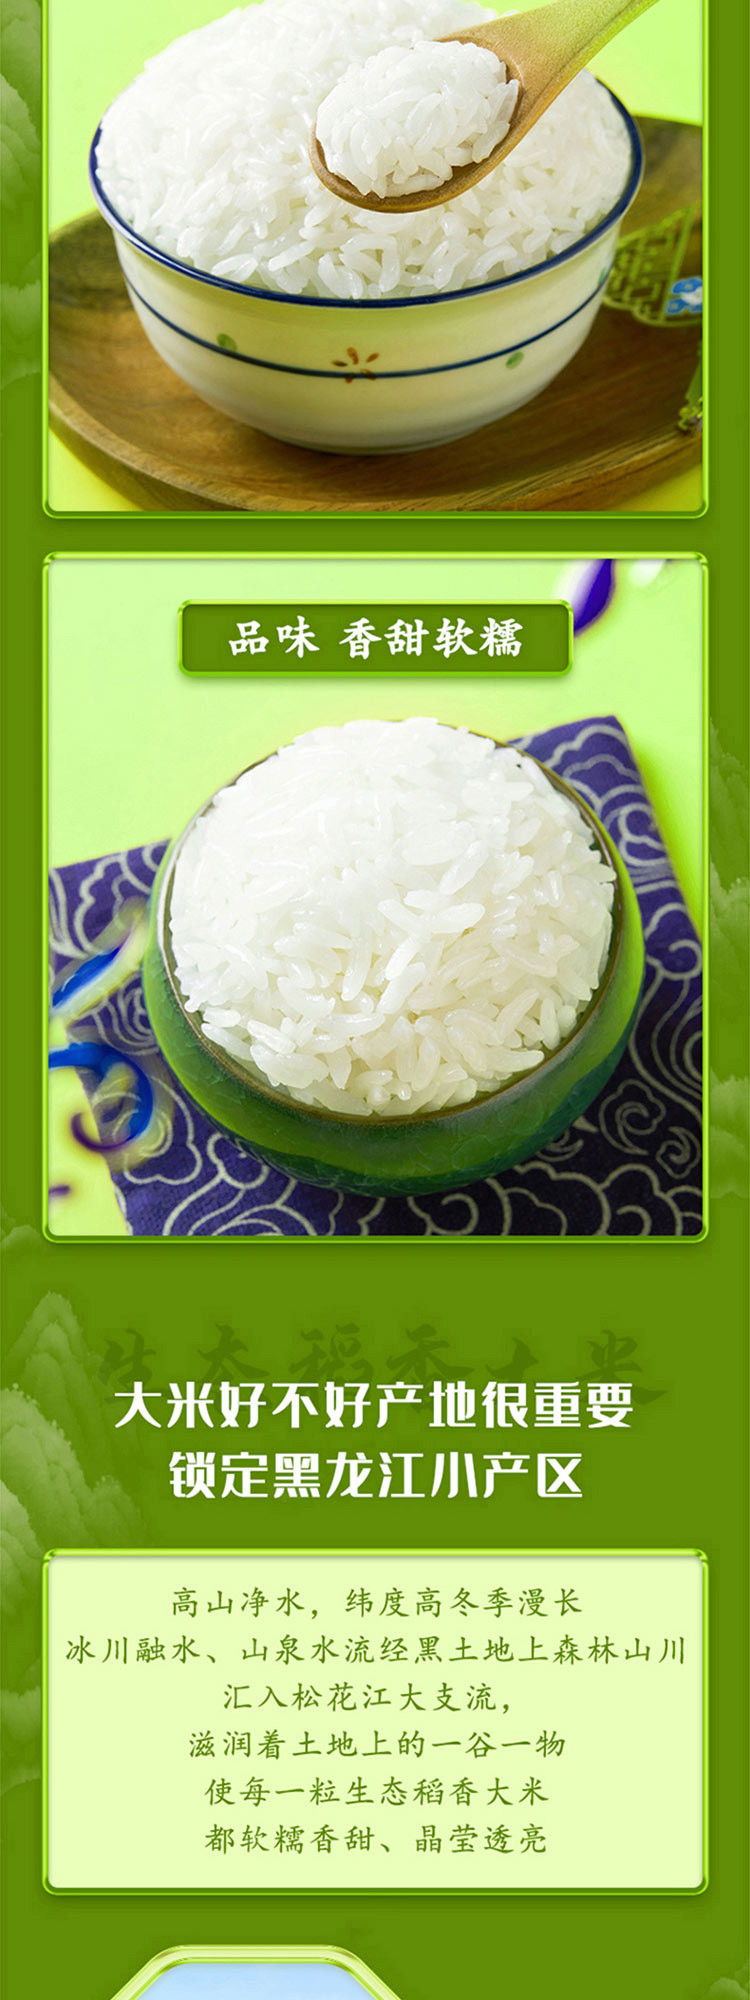 十月稻田 生态稻香大米 2.5kg